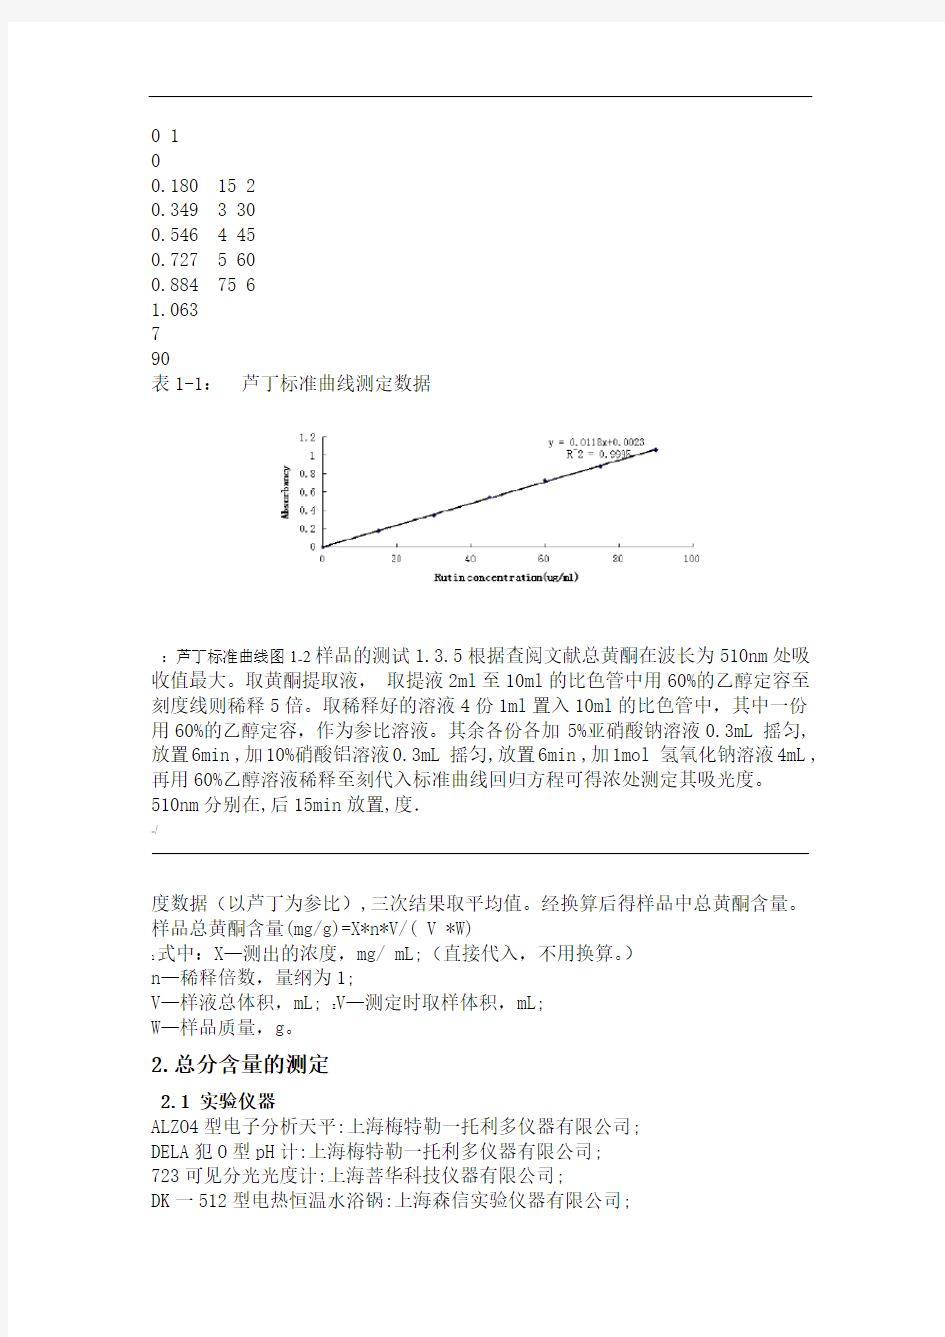 黄酮规范标准曲线绘制的实验报告